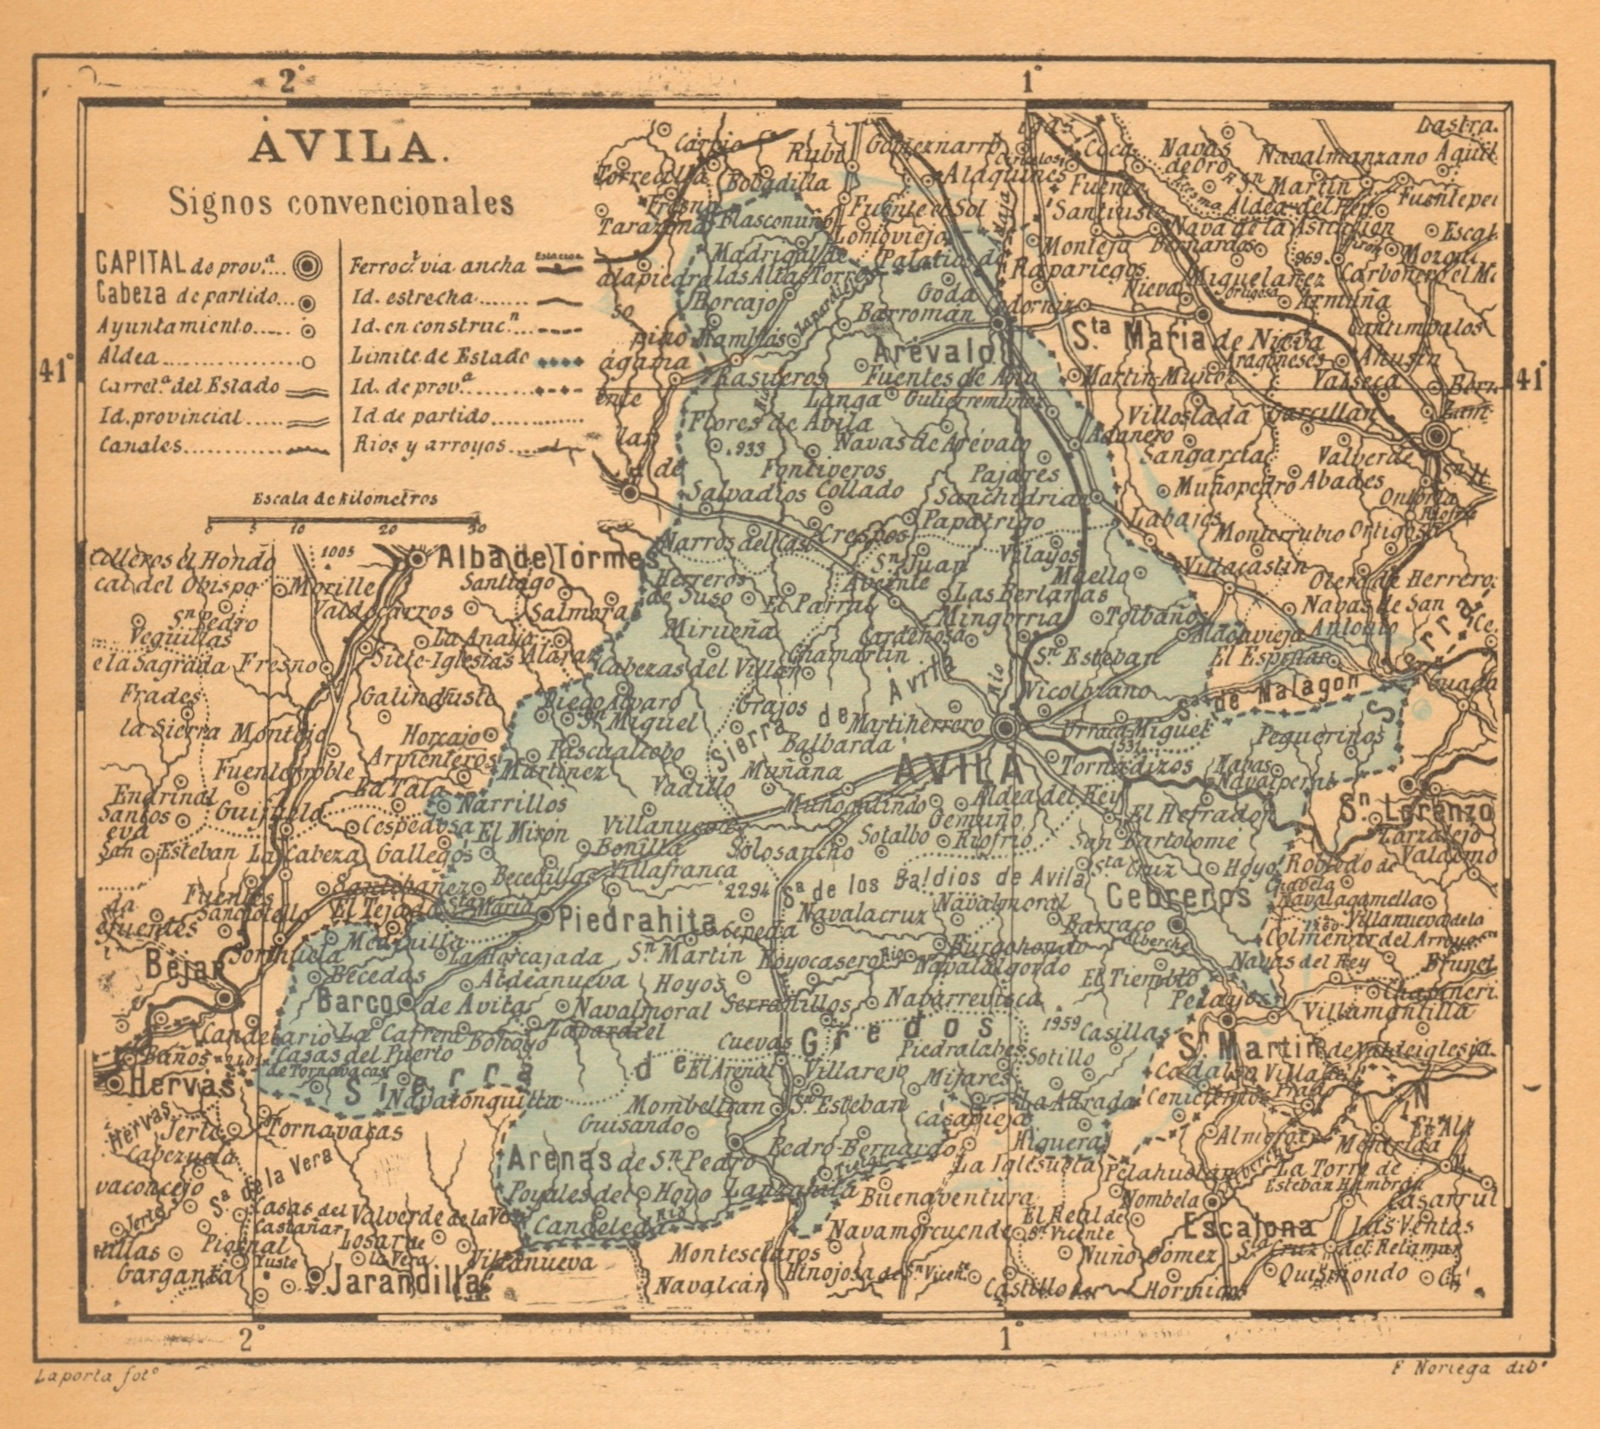 Associate Product ÁVILA. Avila. Castilla y León. Mapa antiguo de la provincia 1914 old